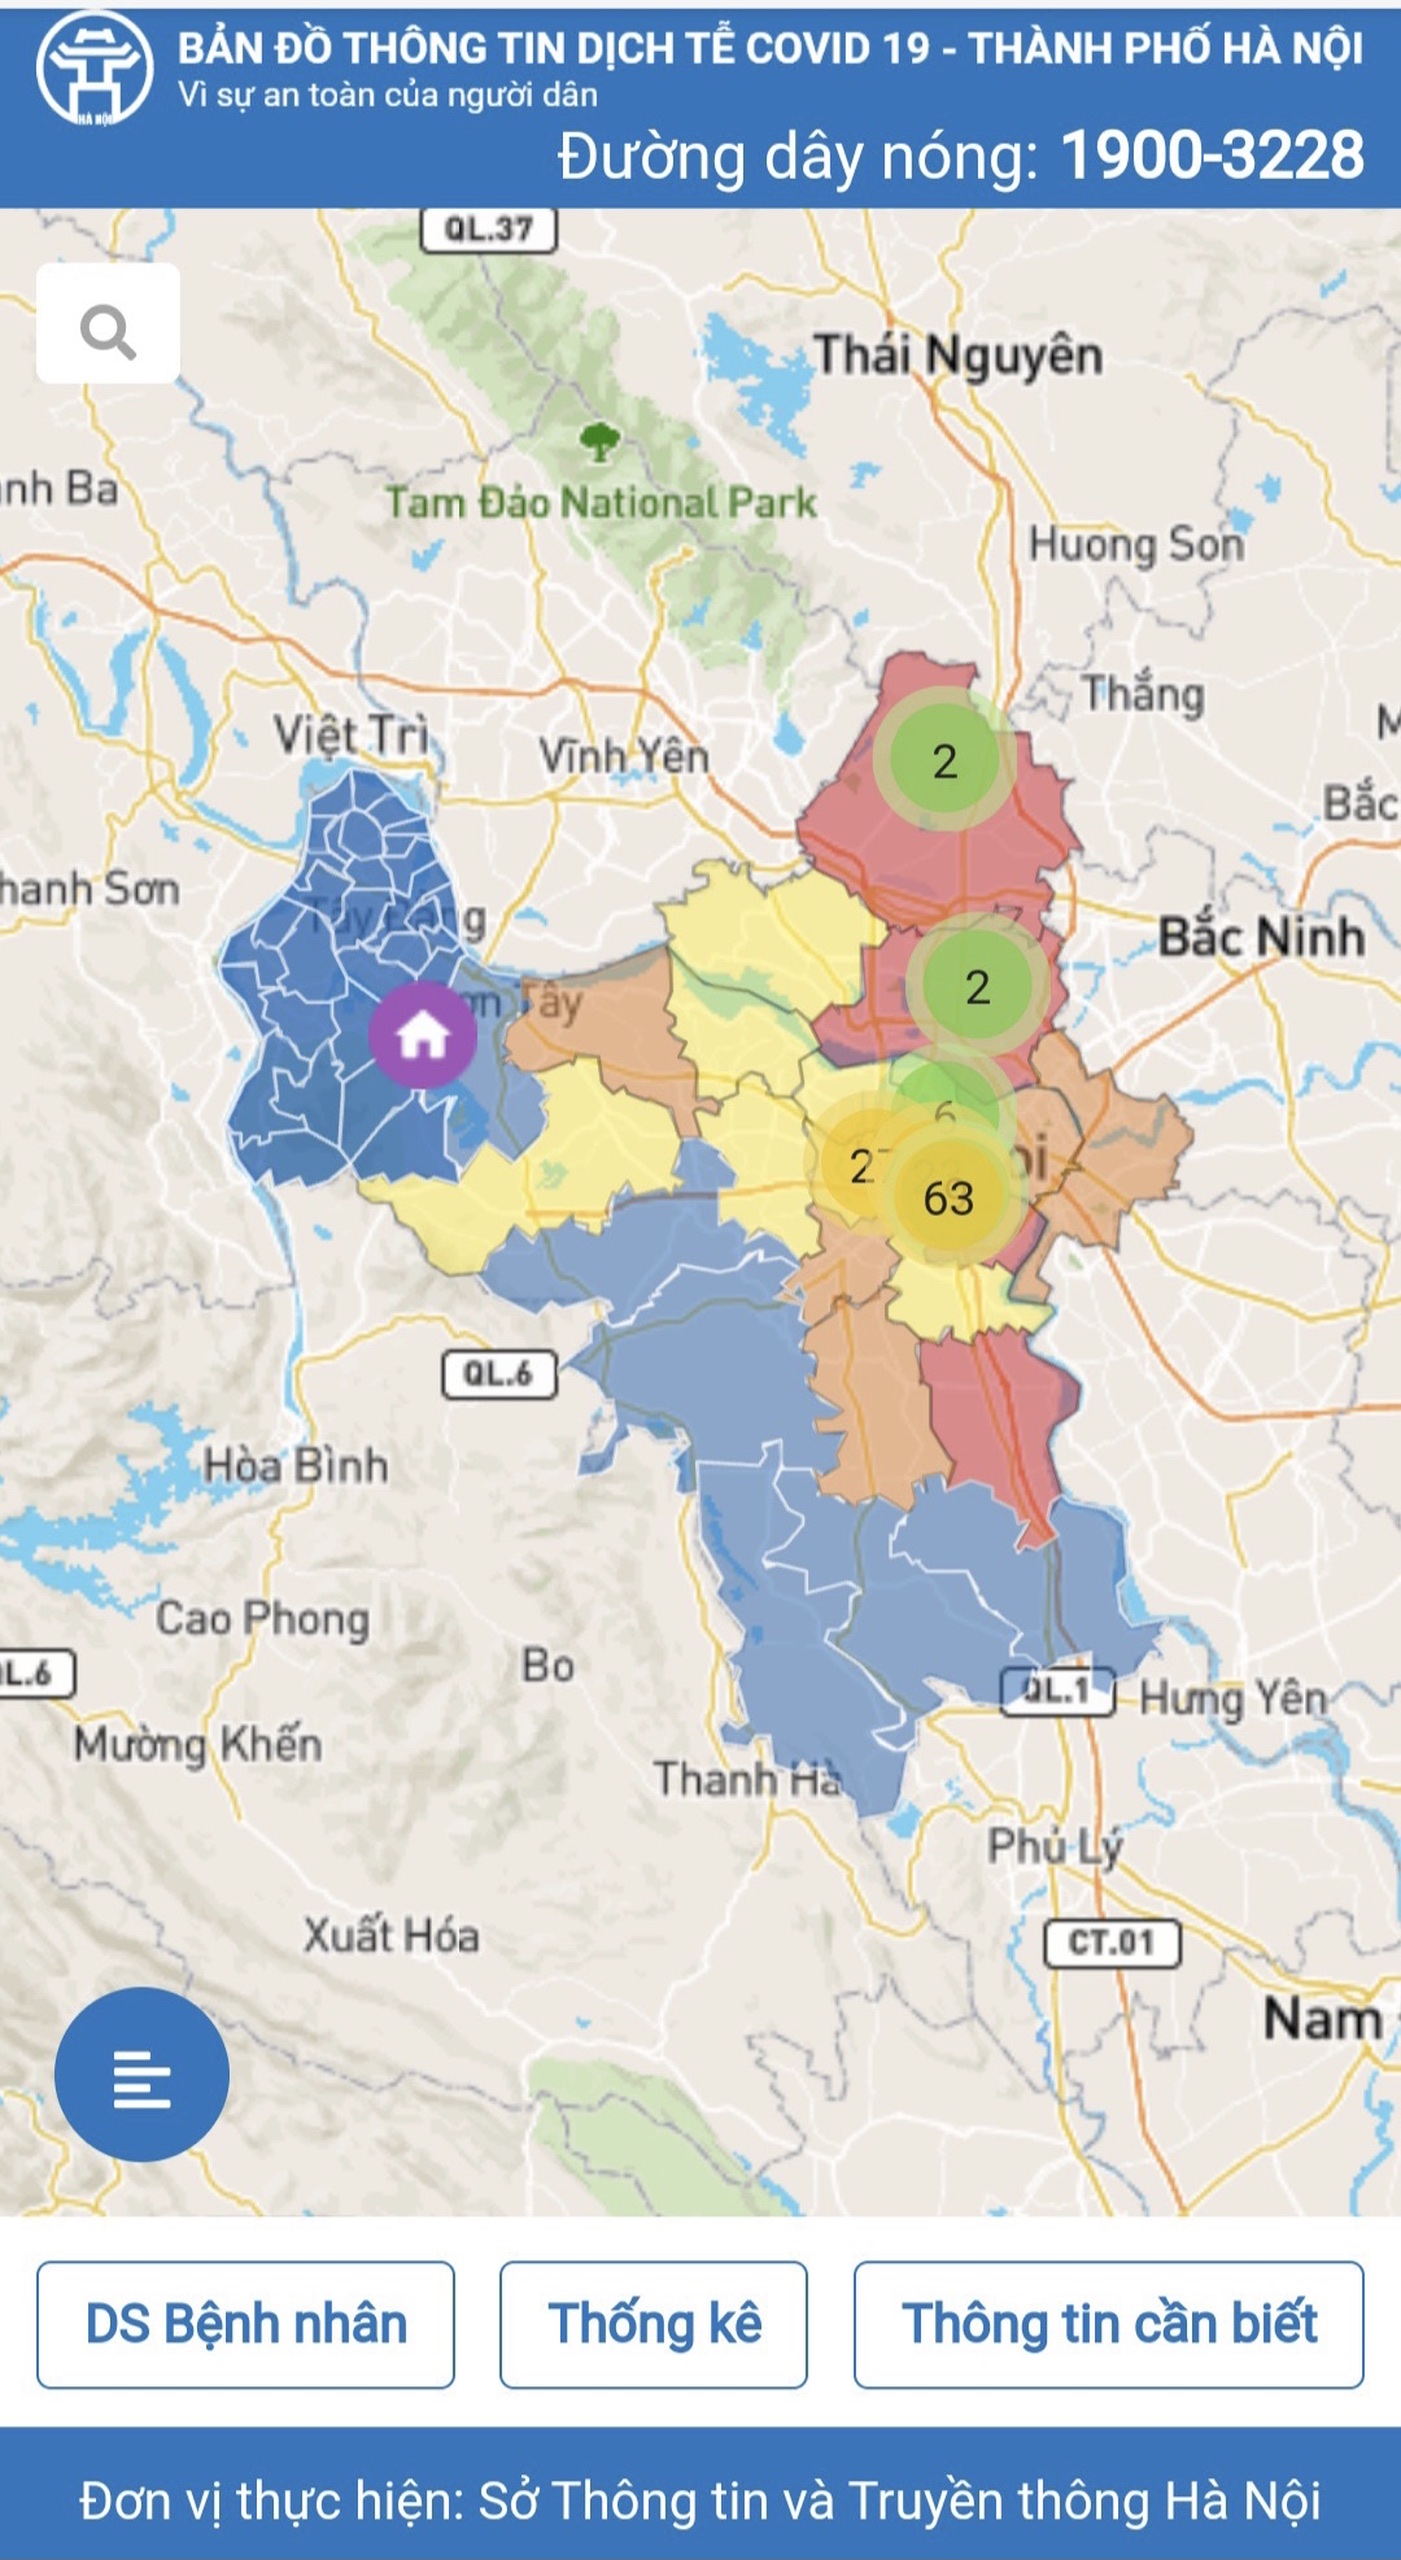 Bản đồ địa điểm cách ly tập trung: Hiểu rõ hơn về các khu vực cách ly tập trung tại Hà Nội bằng cách khám phá bản đồ này. Hãy cùng nhau đoàn kết để chống lại dịch bệnh và giúp đỡ những người đang trong khu vực cách ly.